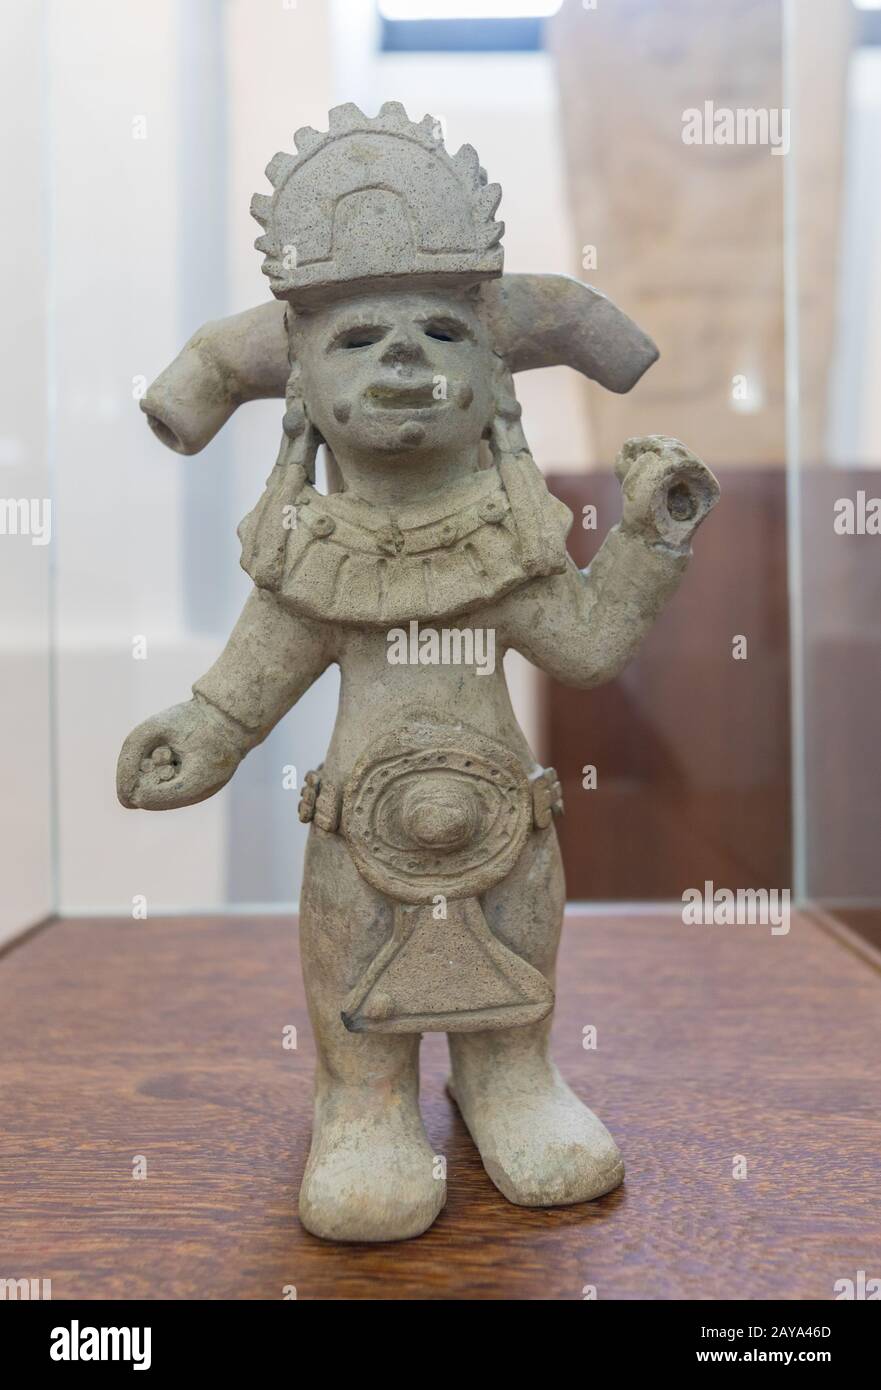 Céramique du Musée national de Bogota représentant une figure anthropomorphique trouvée à Narino Colombie Banque D'Images